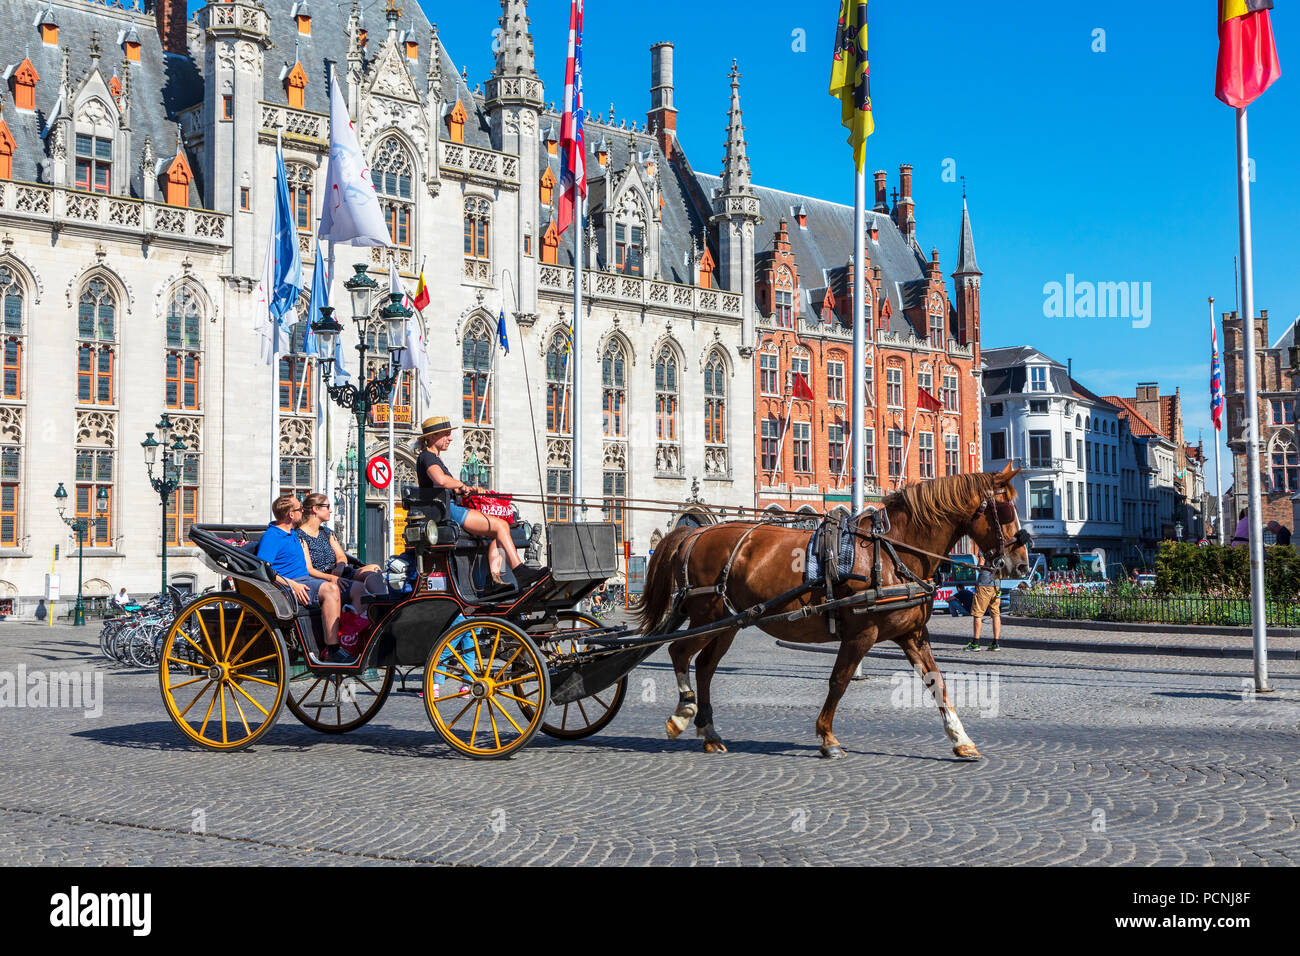 Touristen auf einer City tour mit einem Pferd und Trap, Markt, Brügge, Belgien Stockfoto